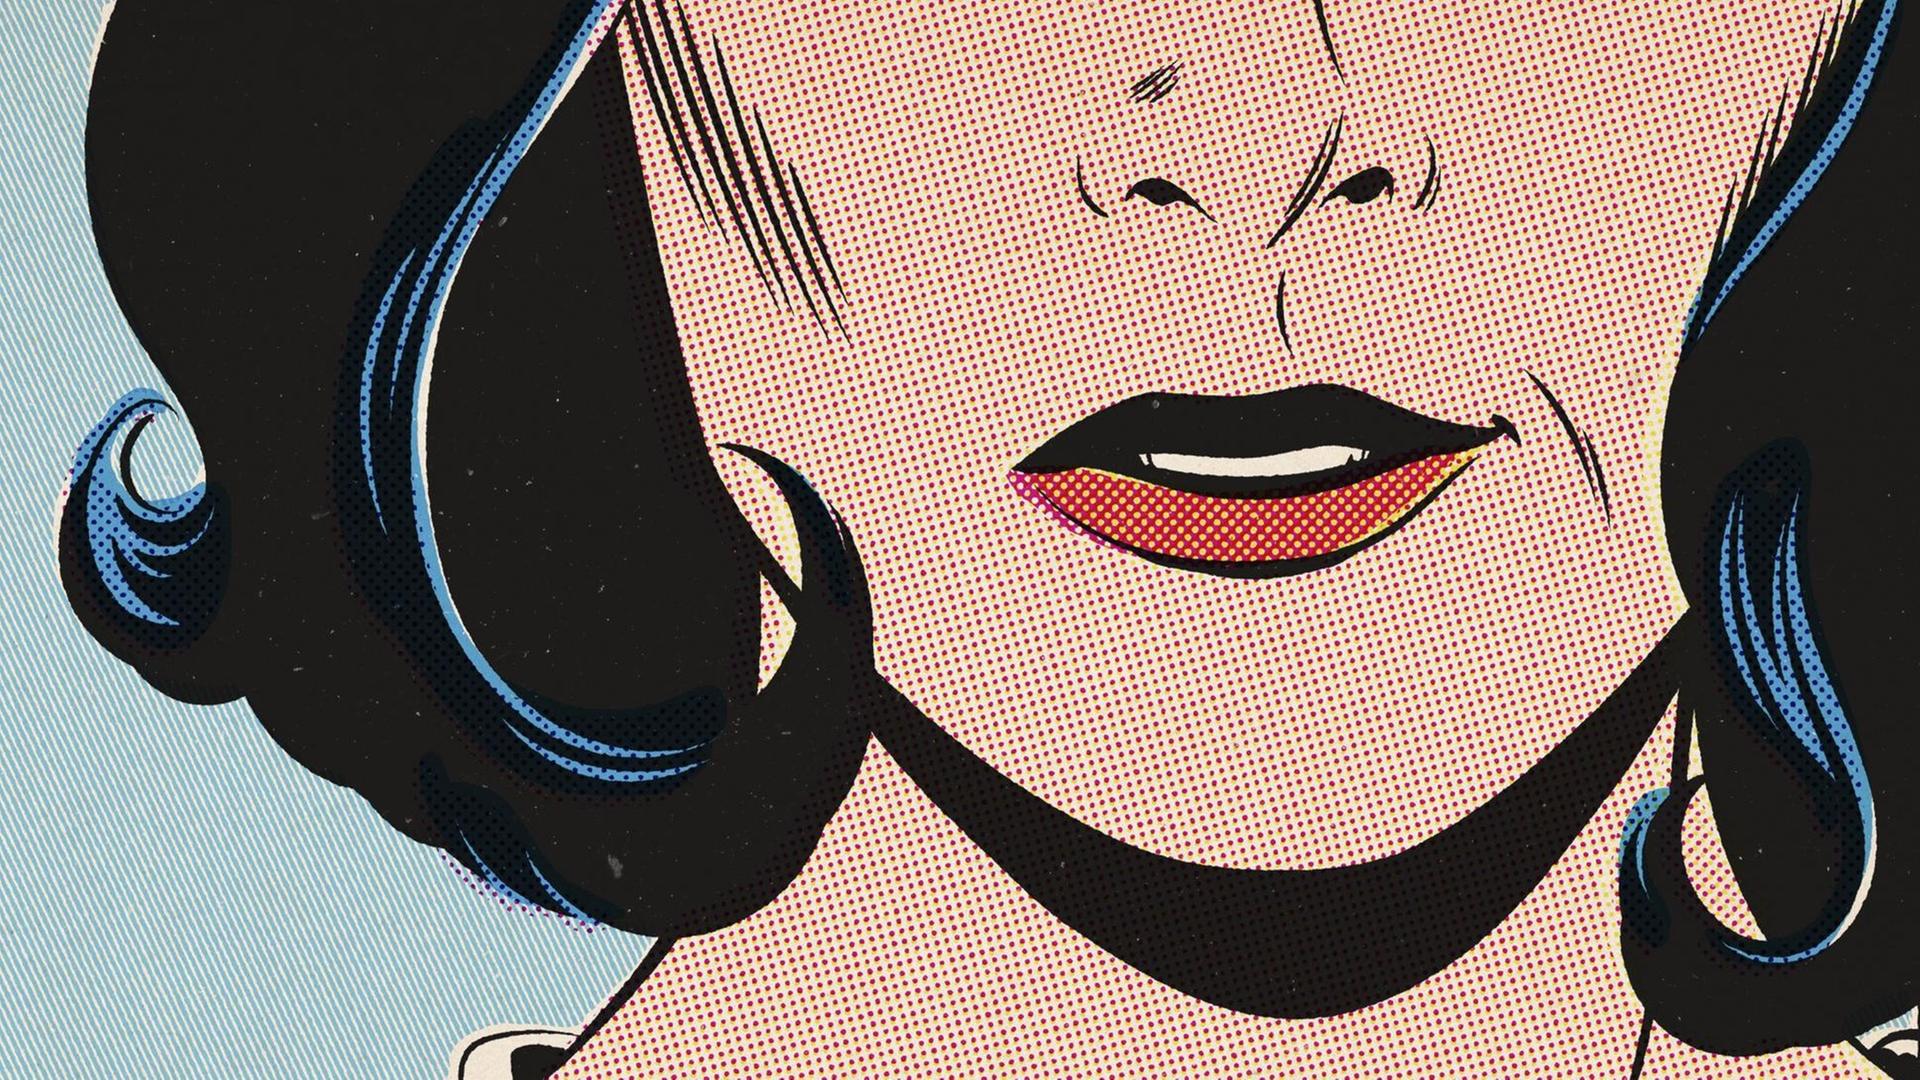 Nahaufnahme der unteren Hälfte eines Frauengesichts im Roy-Lichtenstein-Stil (Illustration)